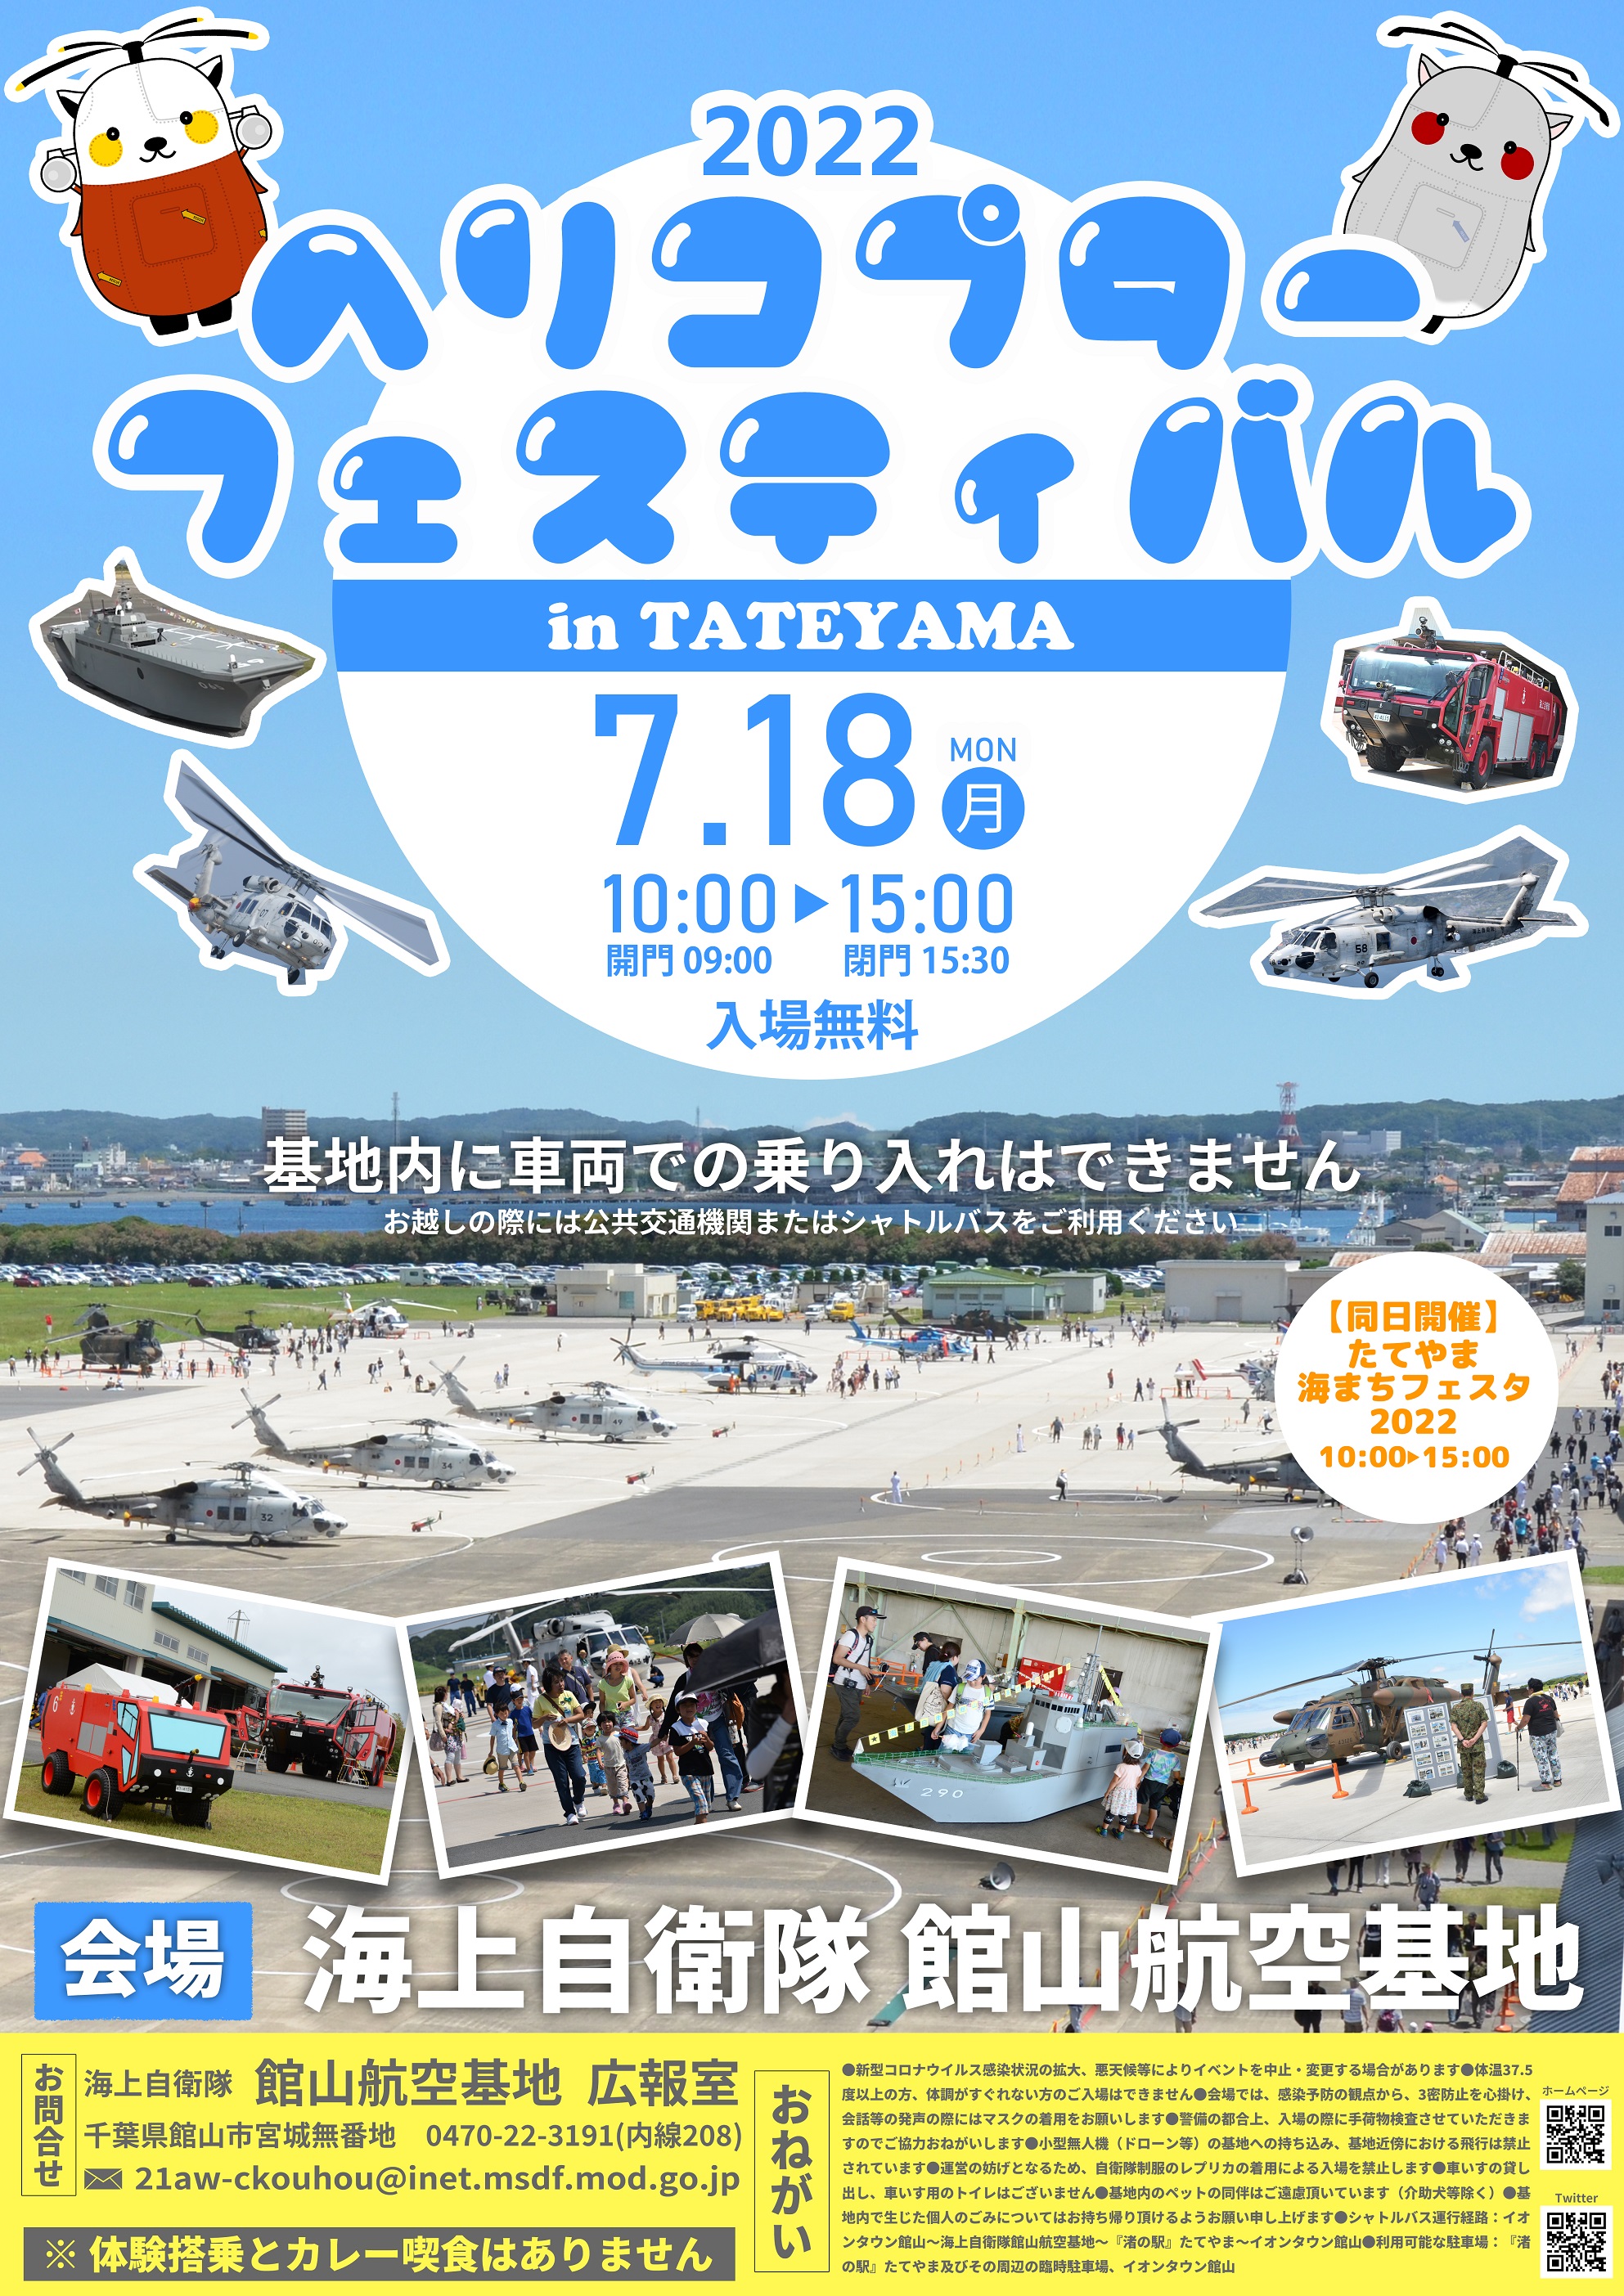 ヘリコプターフェスティバル in TATEYAMA 2022ポスター